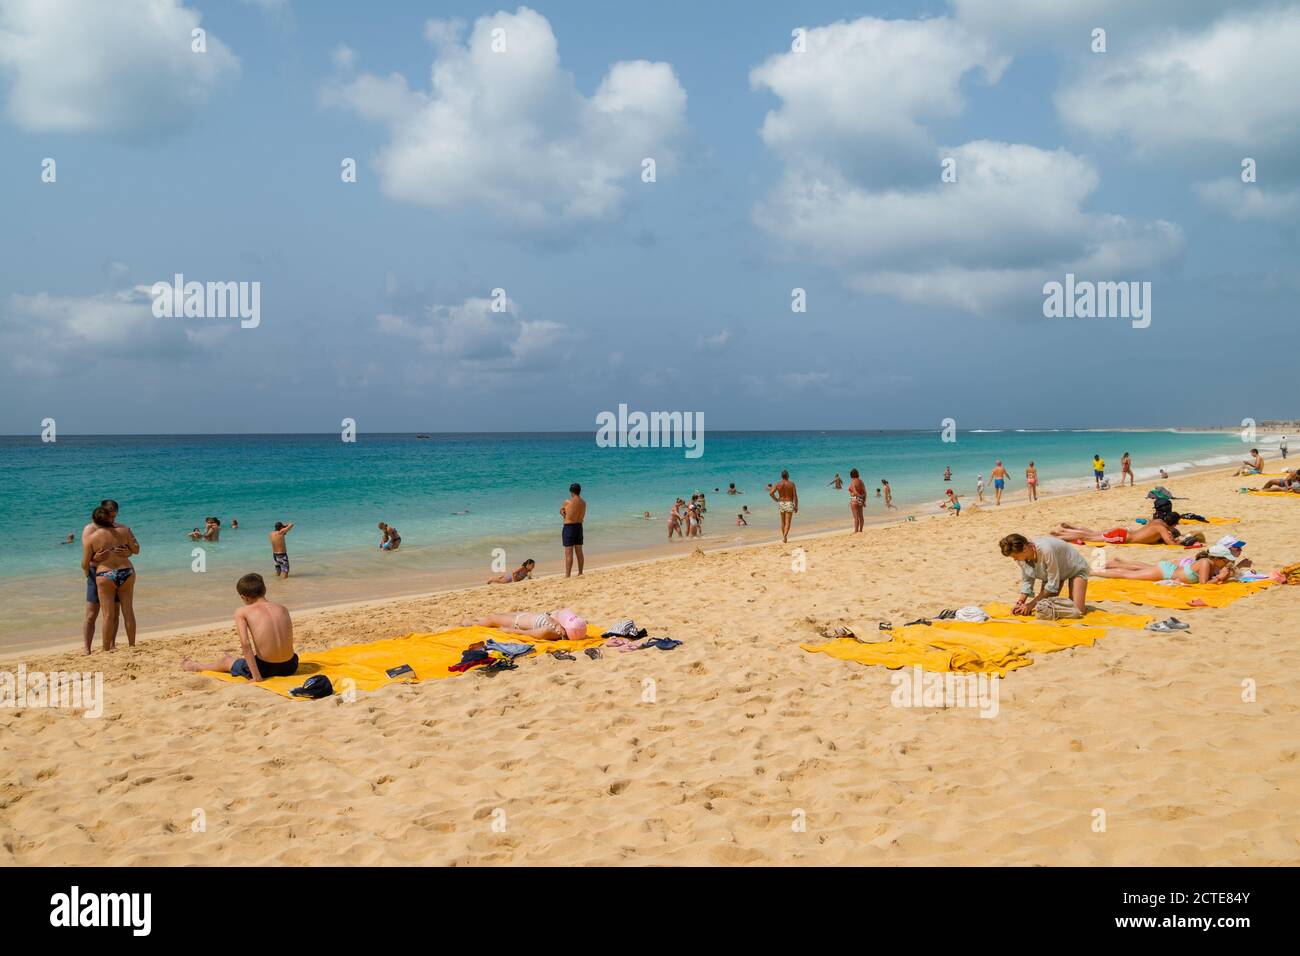 Cap Vert Île Santa Maria Plage Santa Maria touristes sur la plage avec des serviettes jaunes d'hôtel sur le sable. Passer une journée à la plage. Banque D'Images